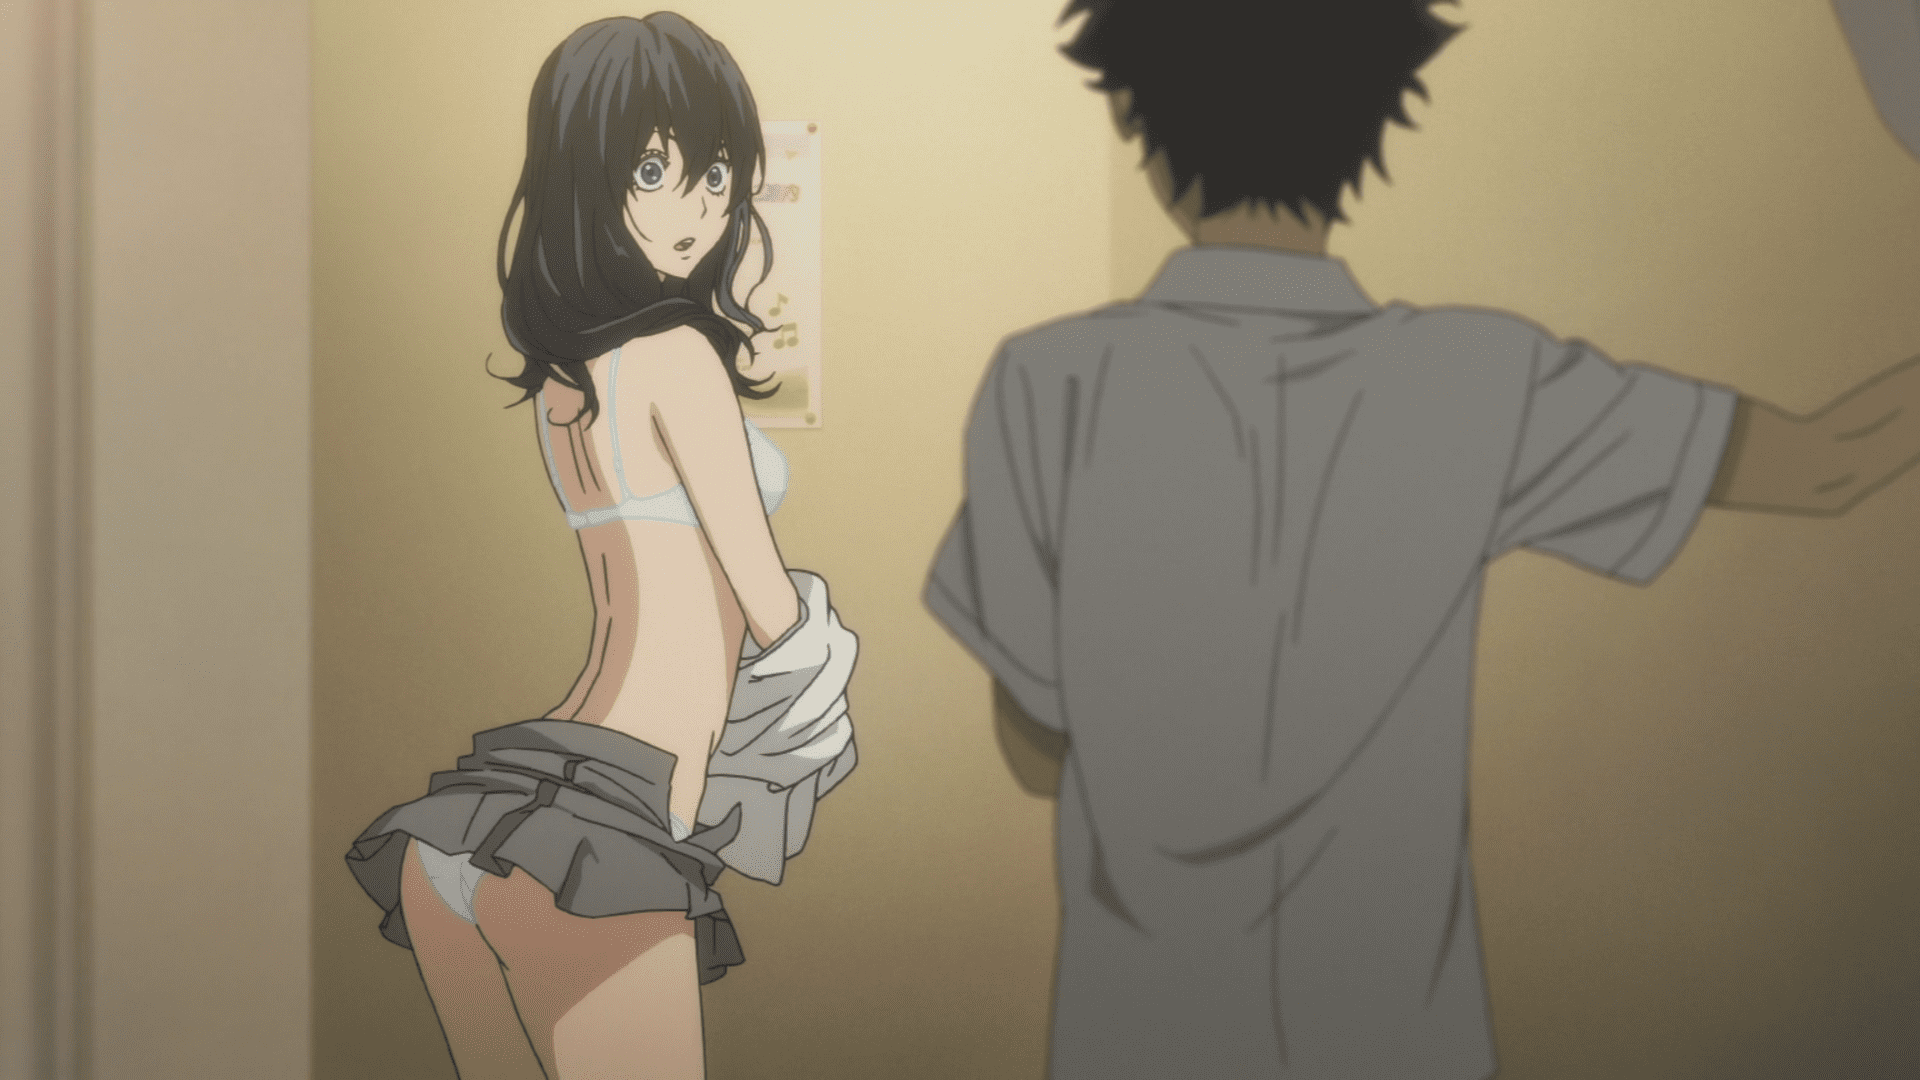 Best of Anime girl taking off shirt